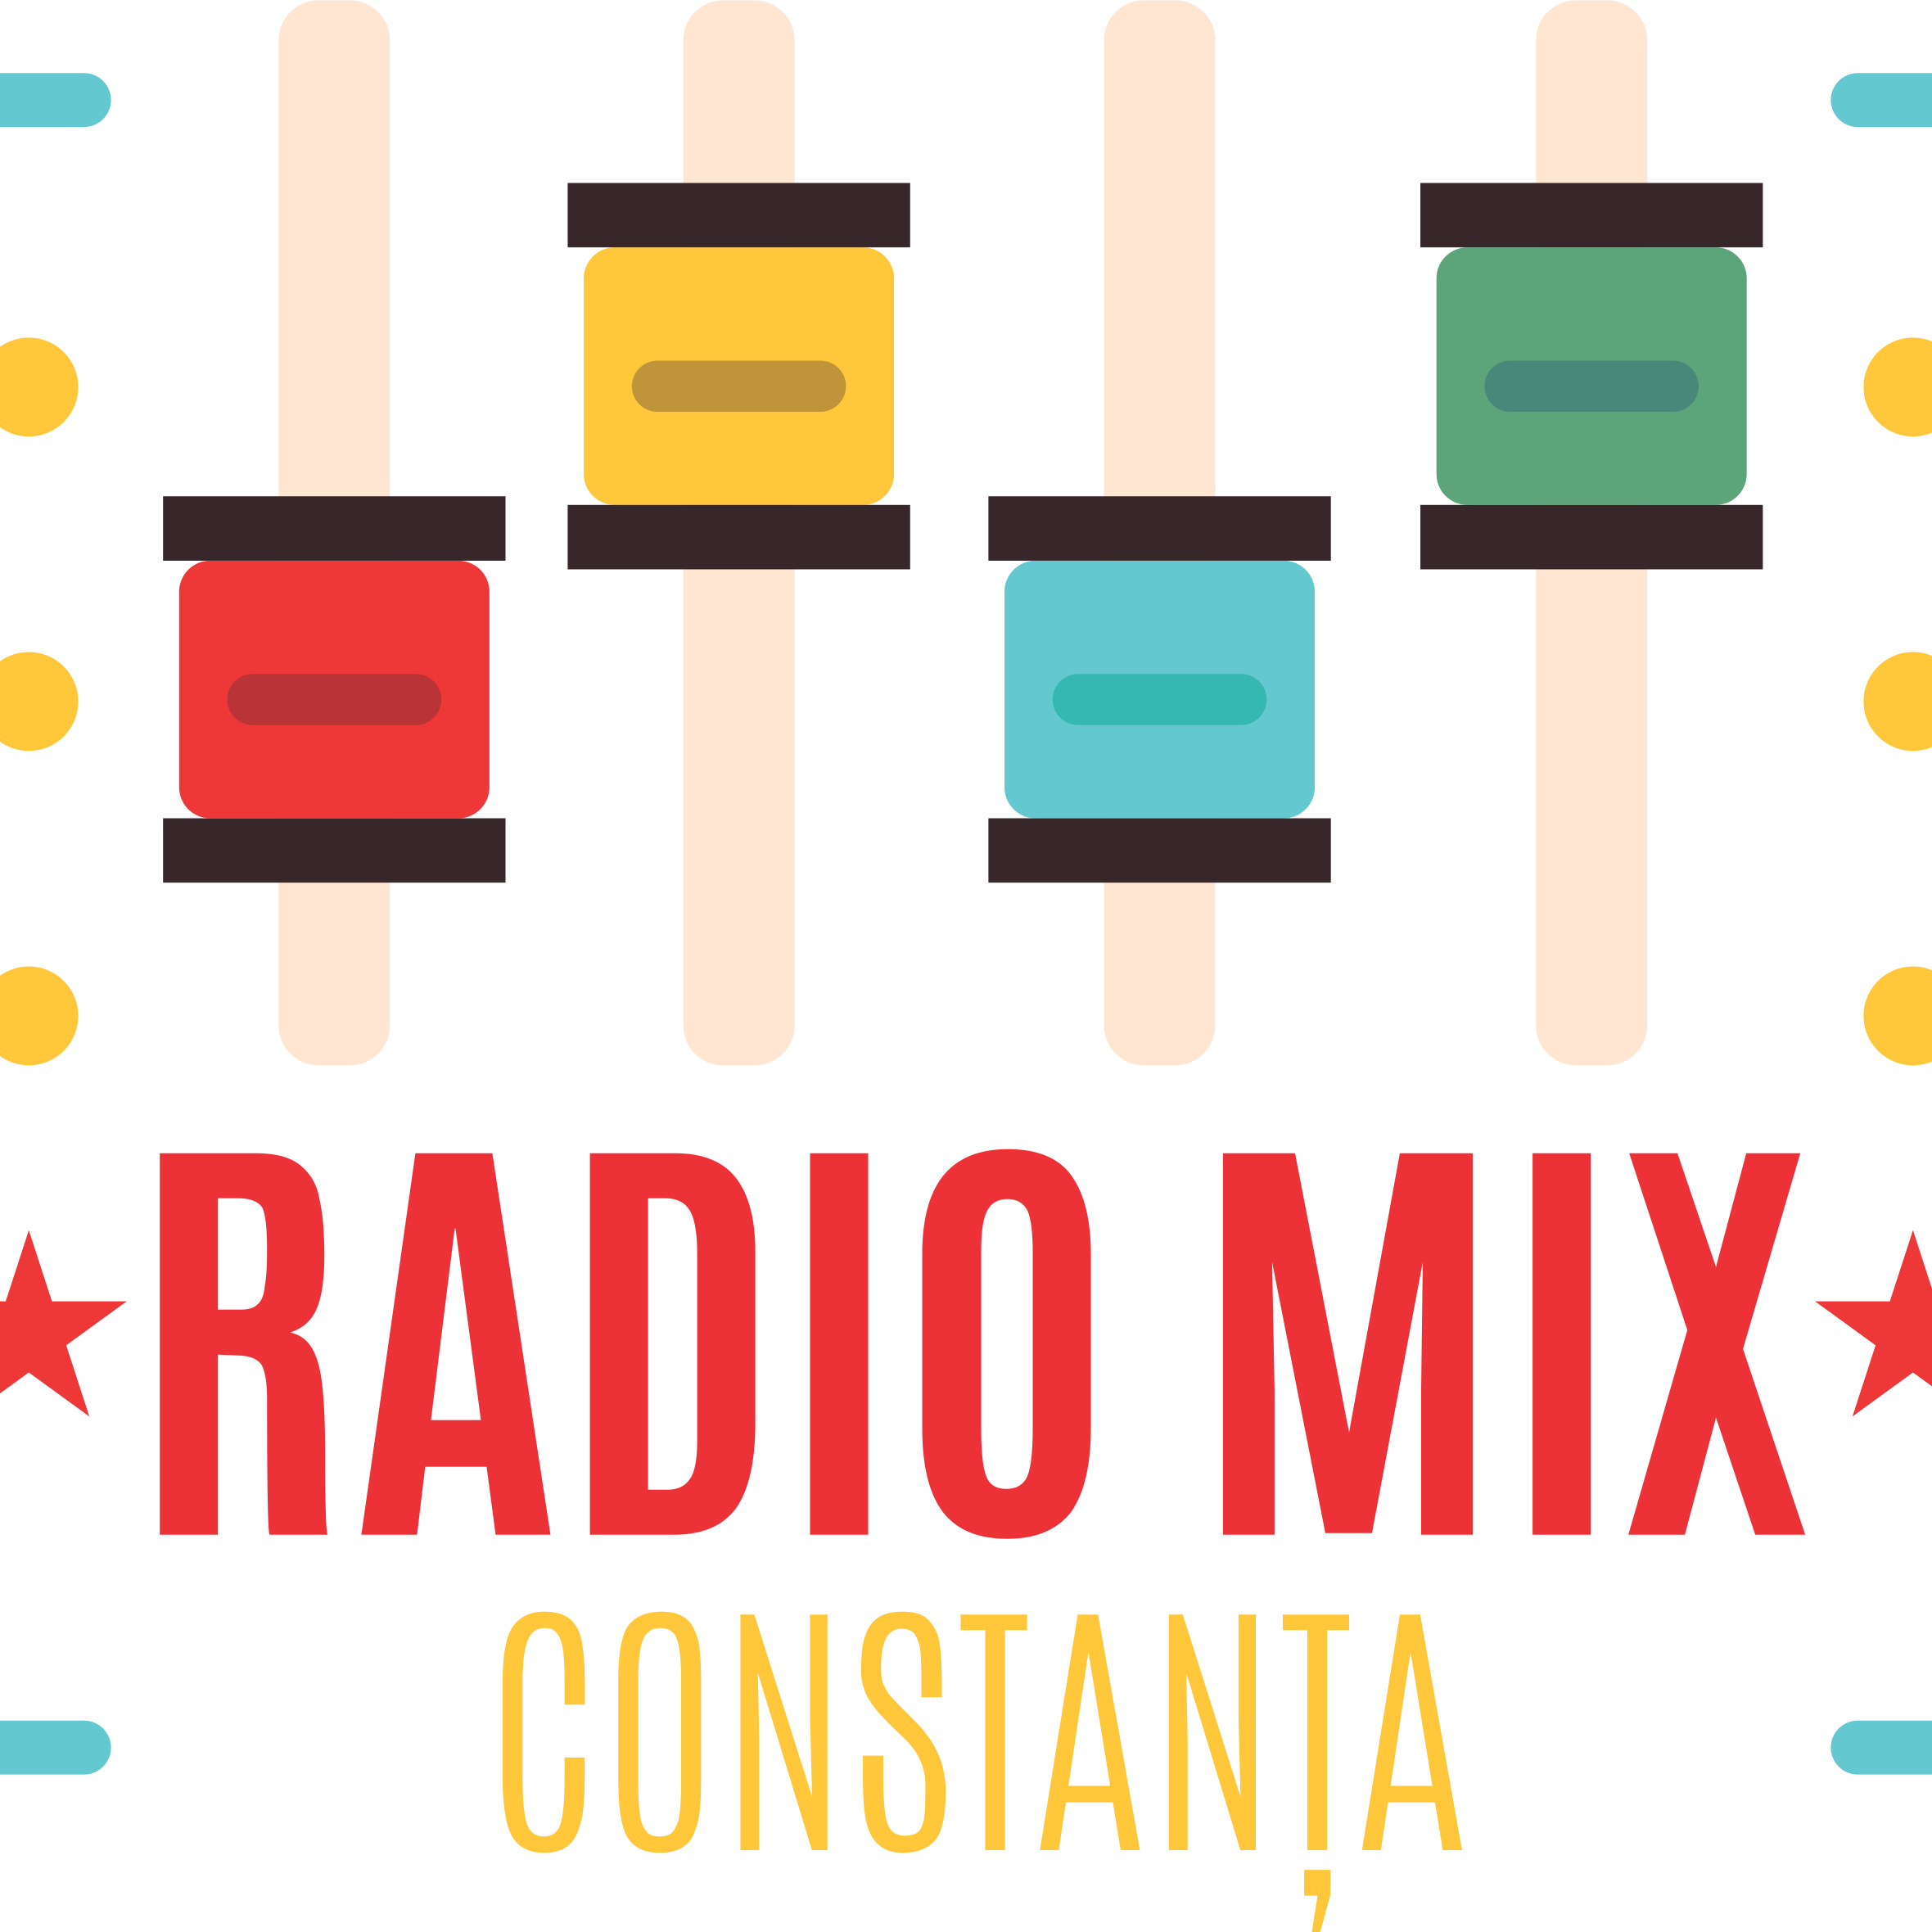 Radio Mix Constanta